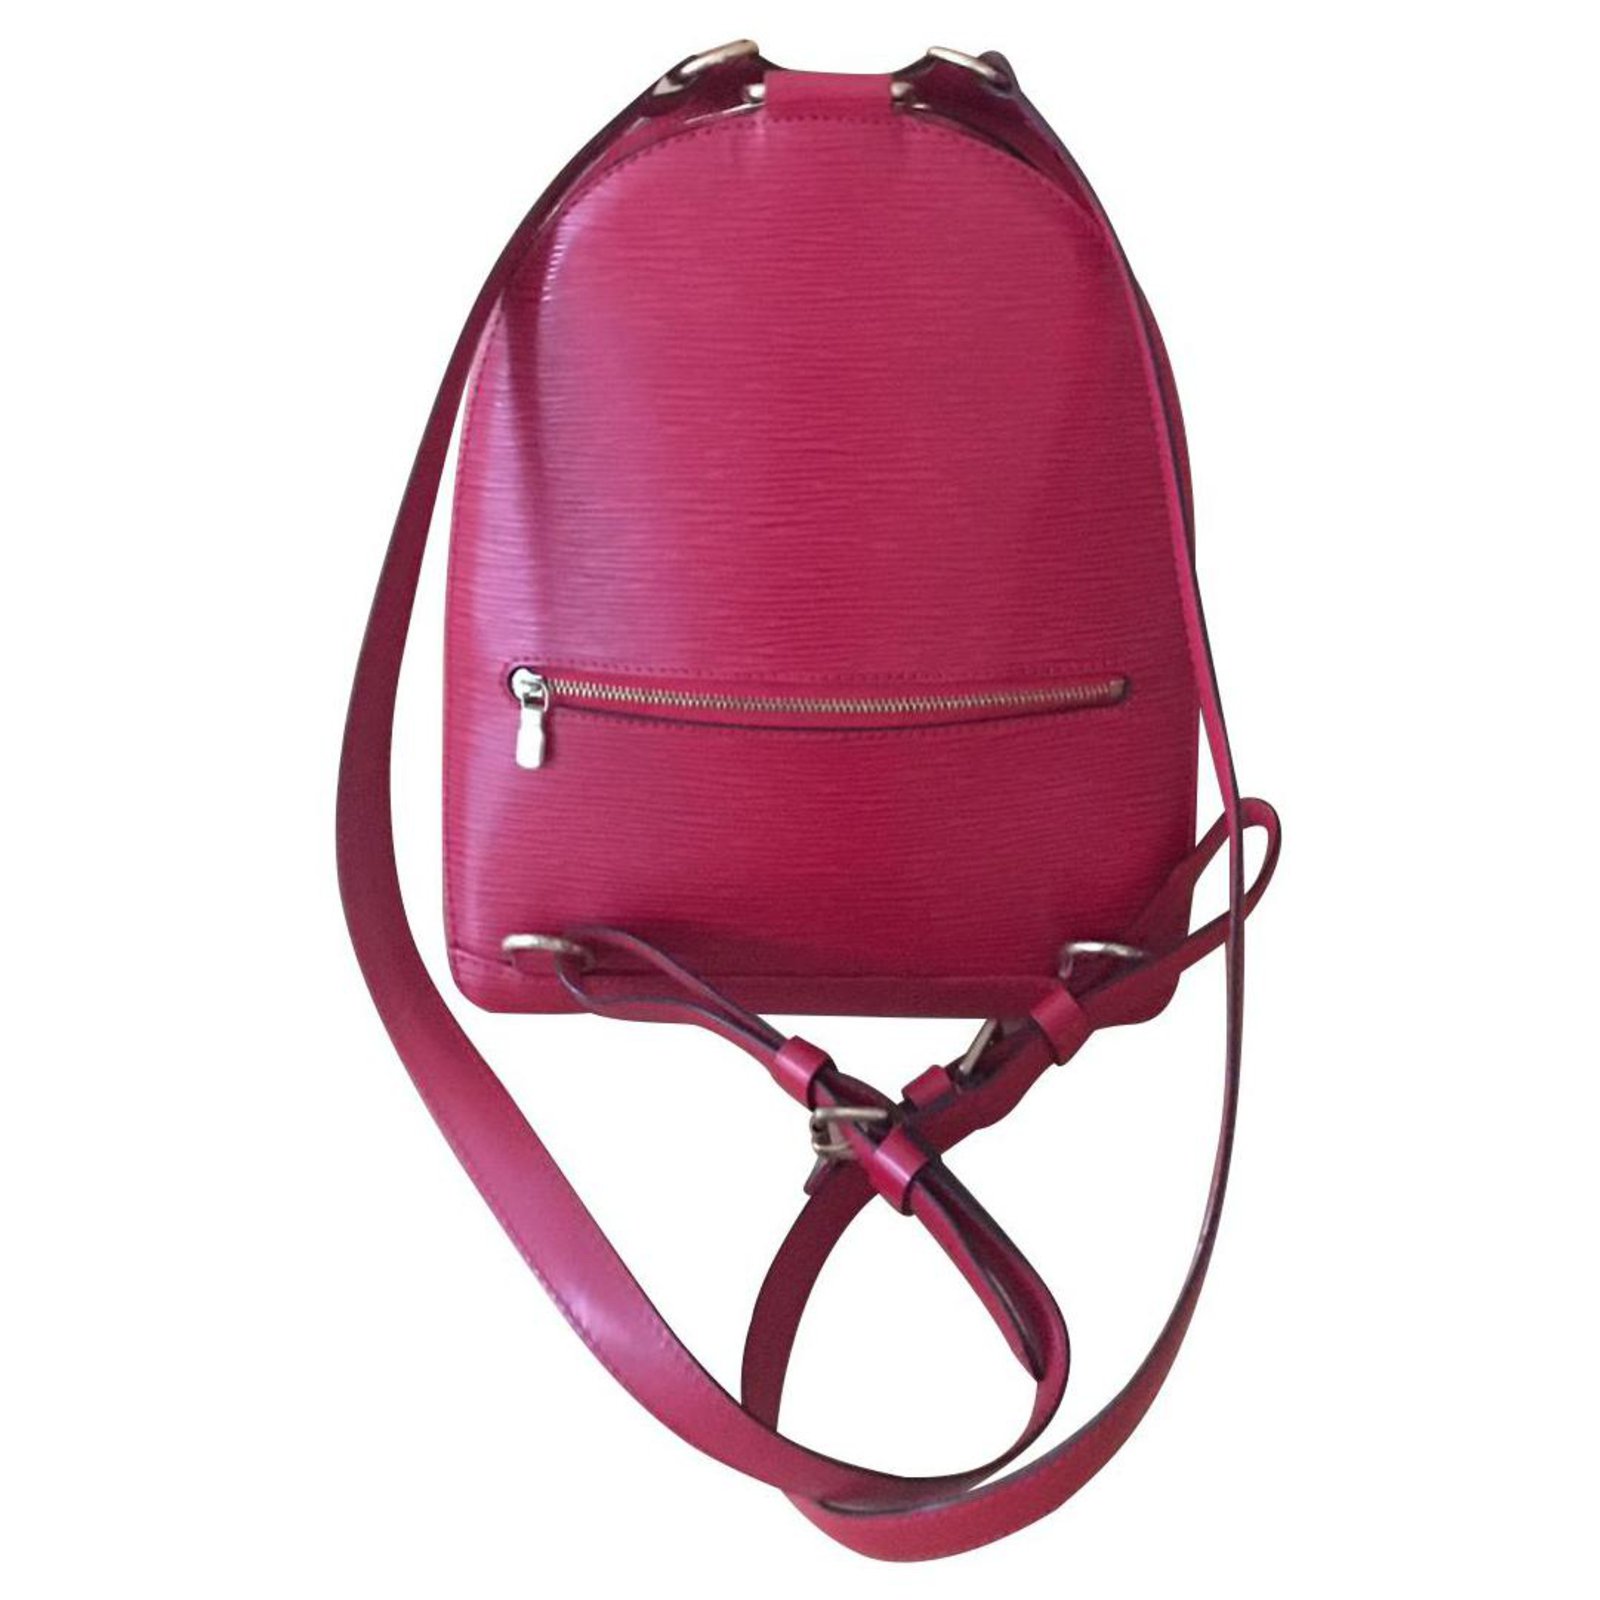 Louis Vuitton Ellipse Backpack